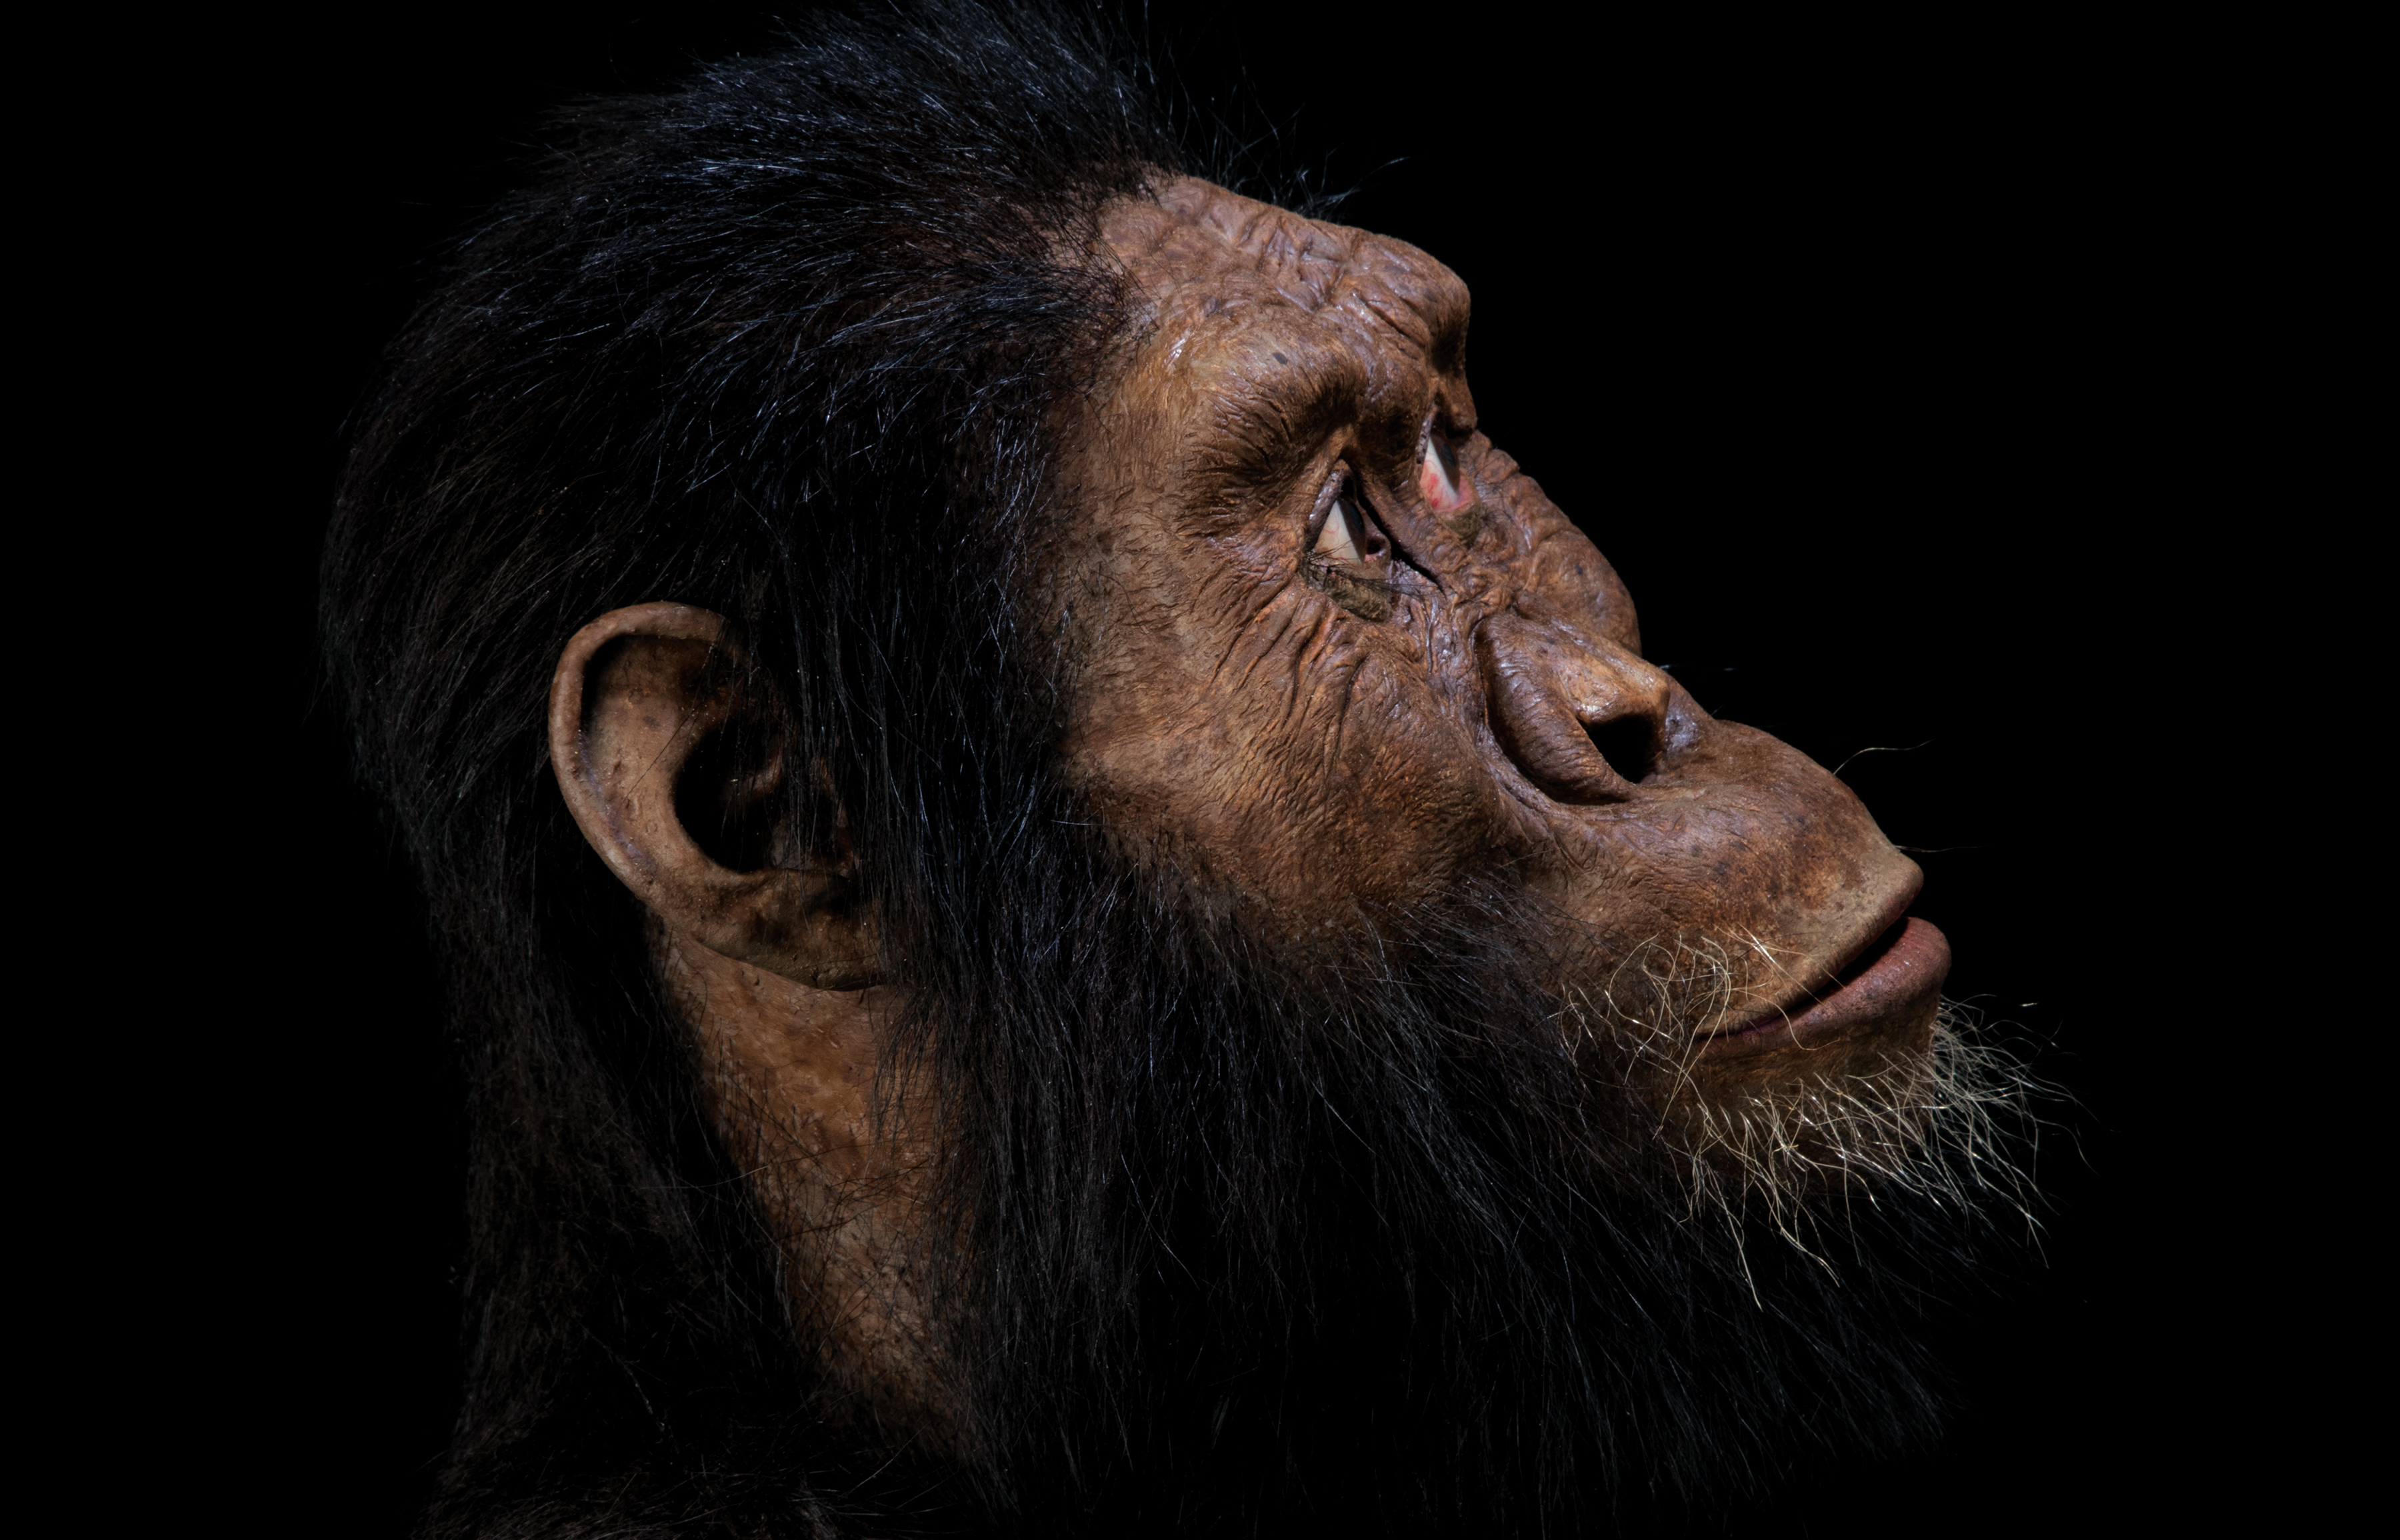 Ученые смоделировали лицо предка человека, возраст которого 4 млн лет